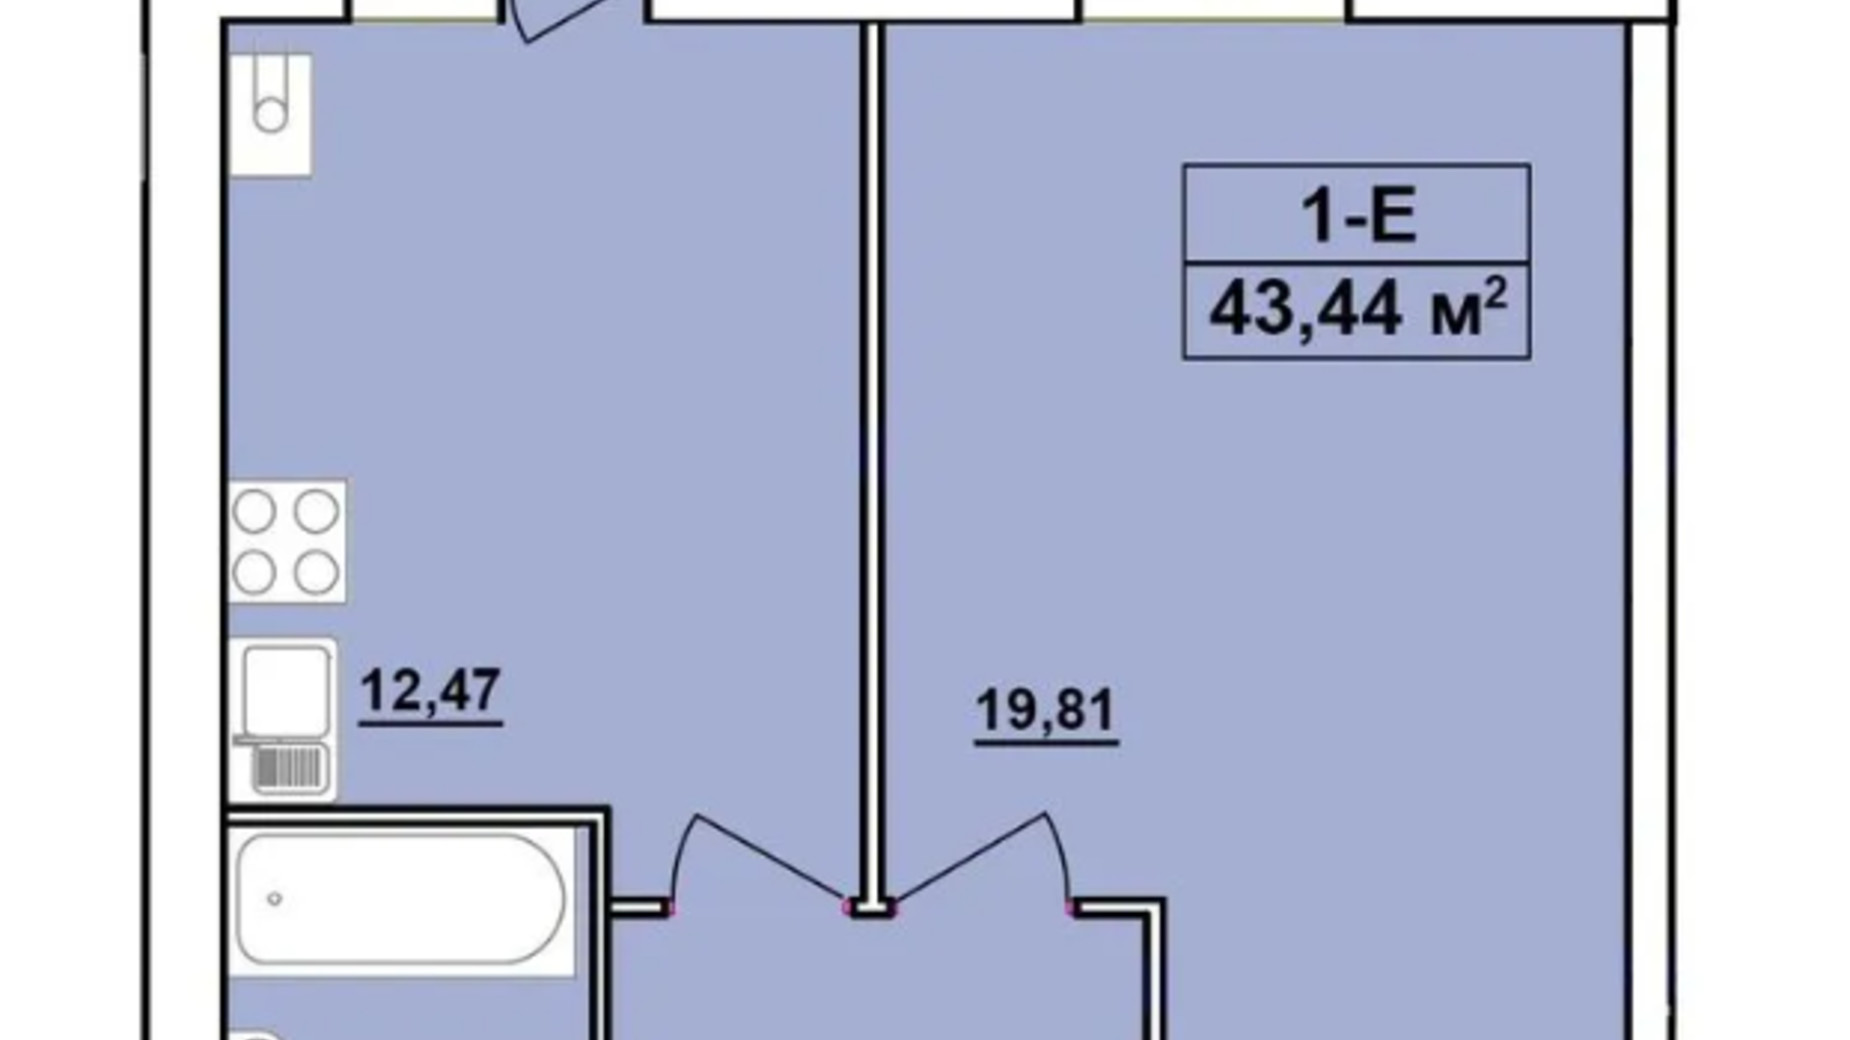 Планировка 1-комнатной квартиры в ЖК Комфортный 43.44 м², фото 641653